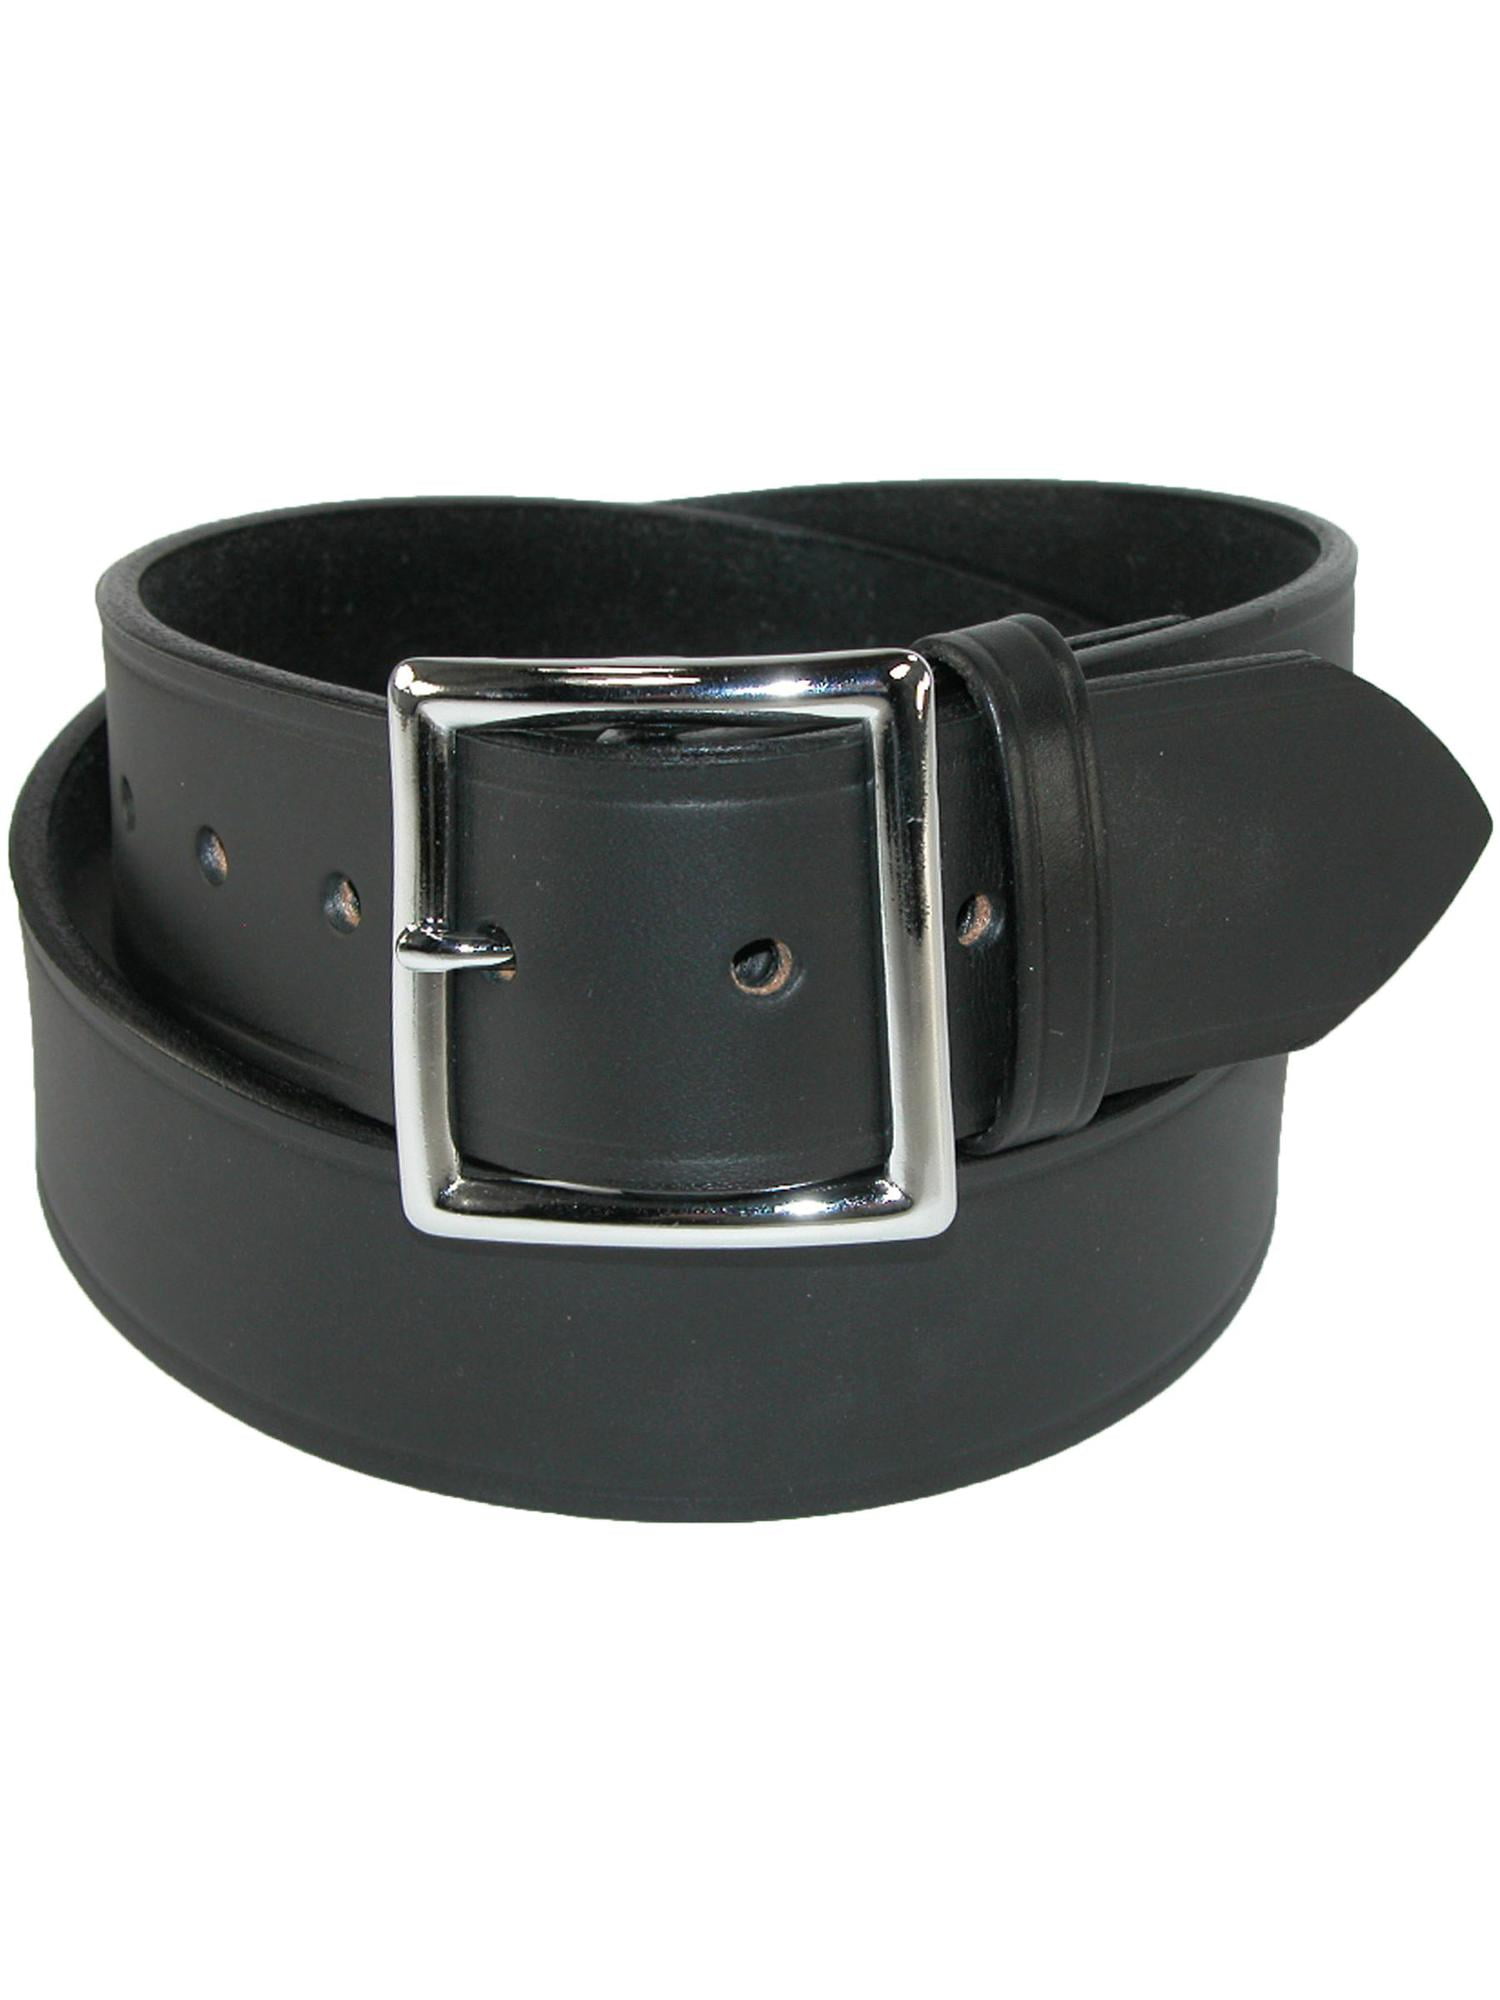 Garrison Leather Belt 38, Black Boston Leather 1.75in 